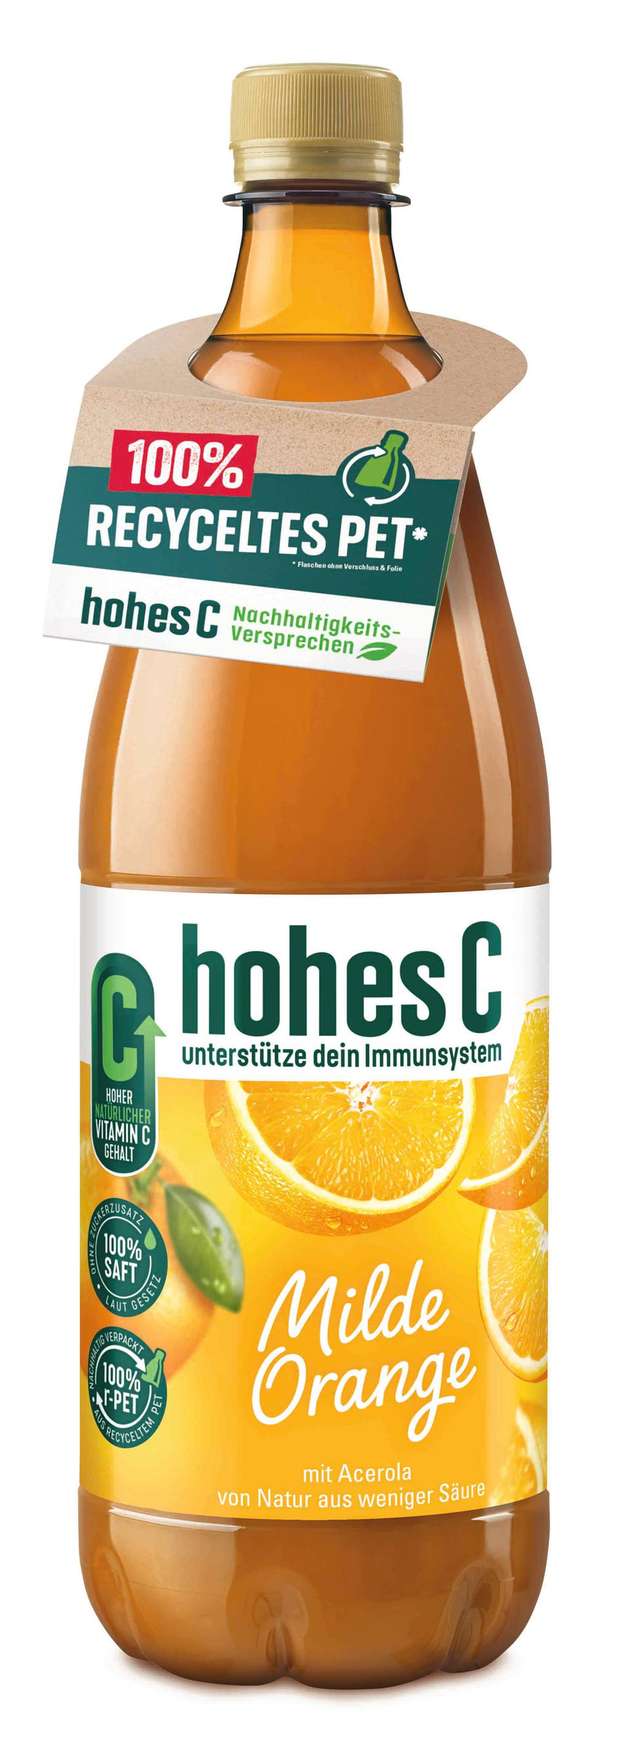 Hohes C war der erste trinkfertige Orangensaft, der 1958 auf dem deutschen Markt eingeführt wurde.